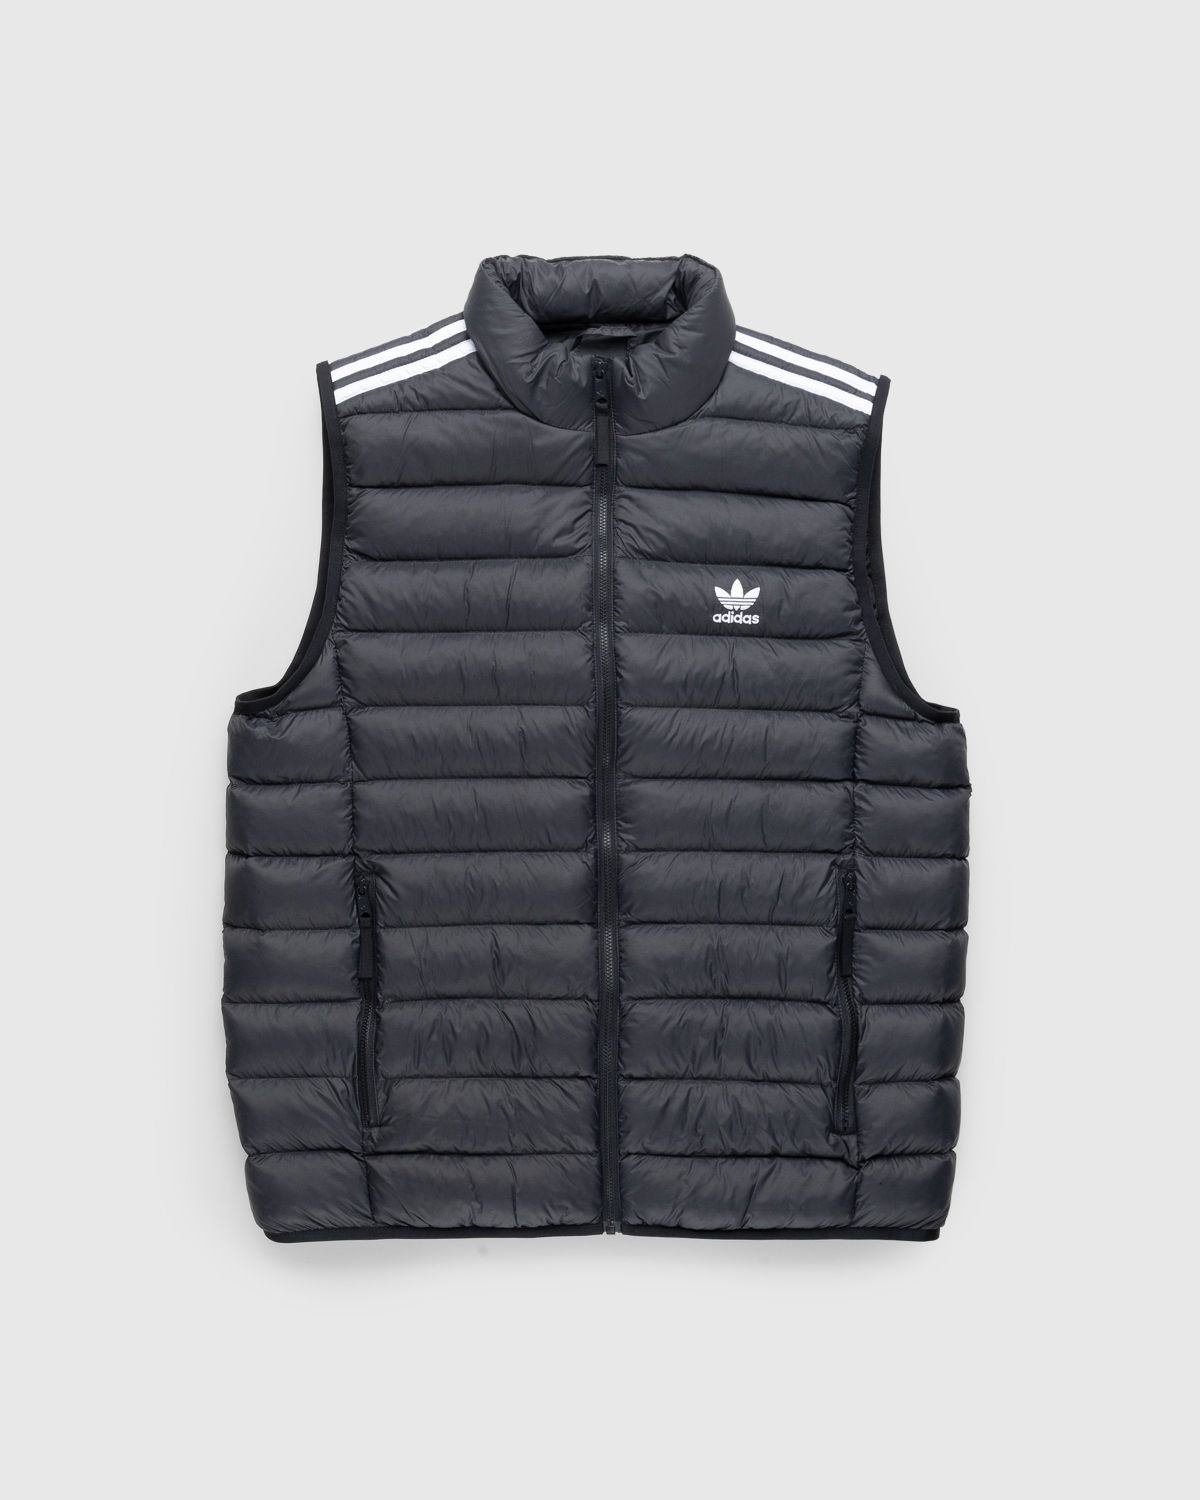 Adidas – Padded Shop Black/White Vest Highsnobiety 